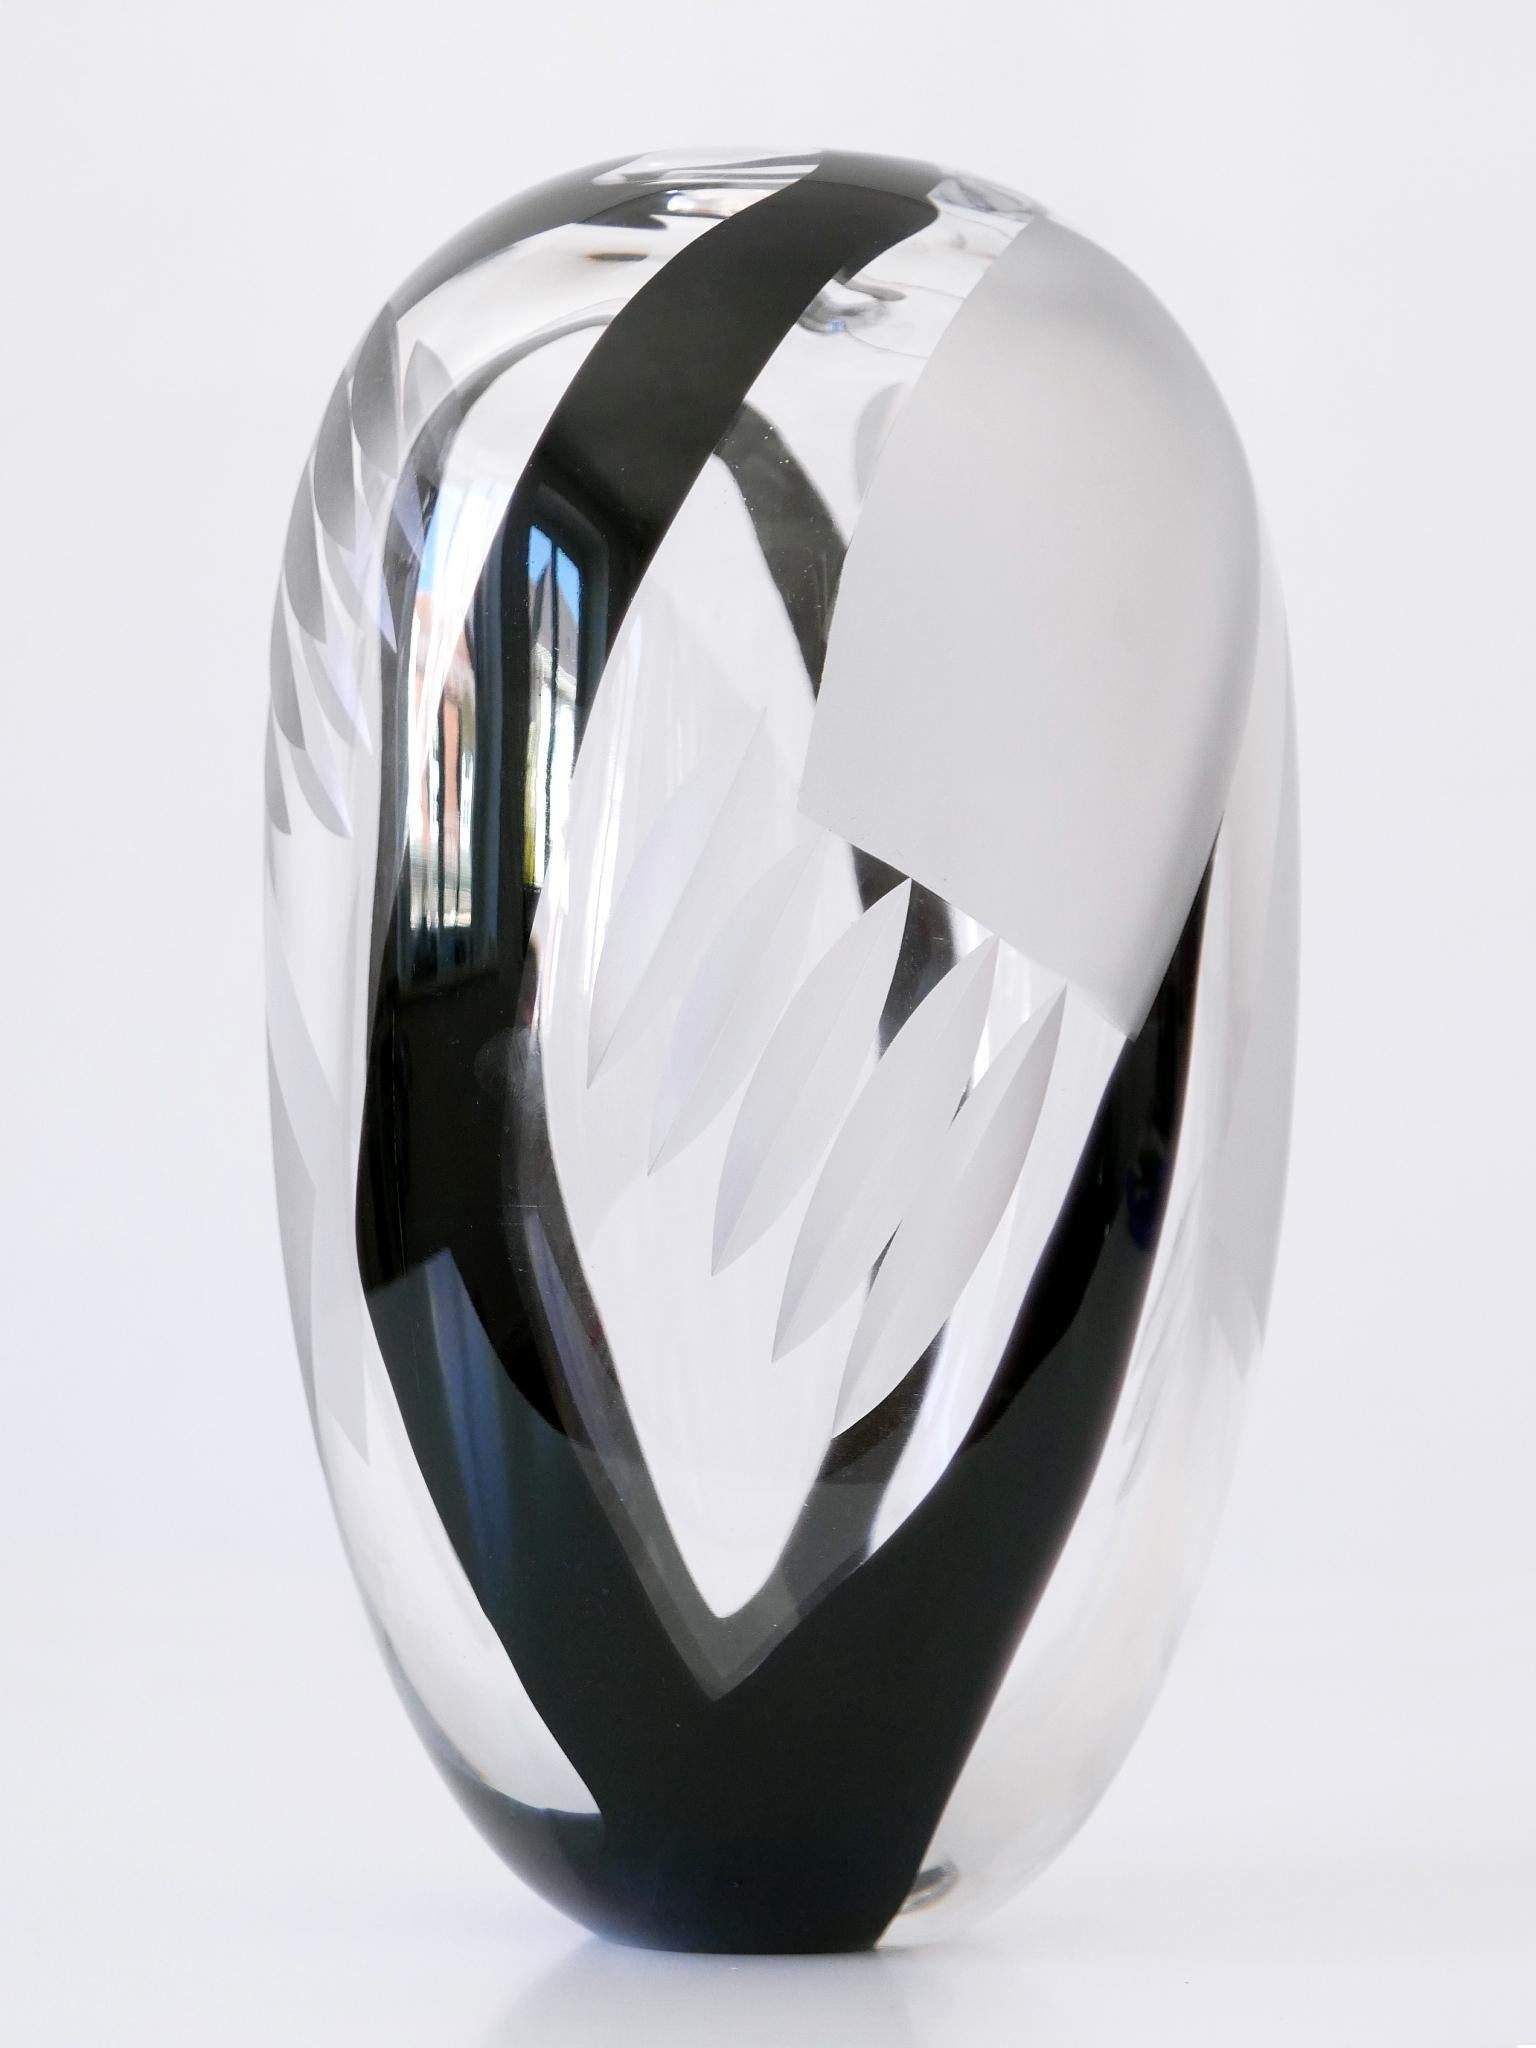 Unique Art Glass Vase by Anna Ehrer for Kosta Boda Sweden 1992 Signed For Sale 9